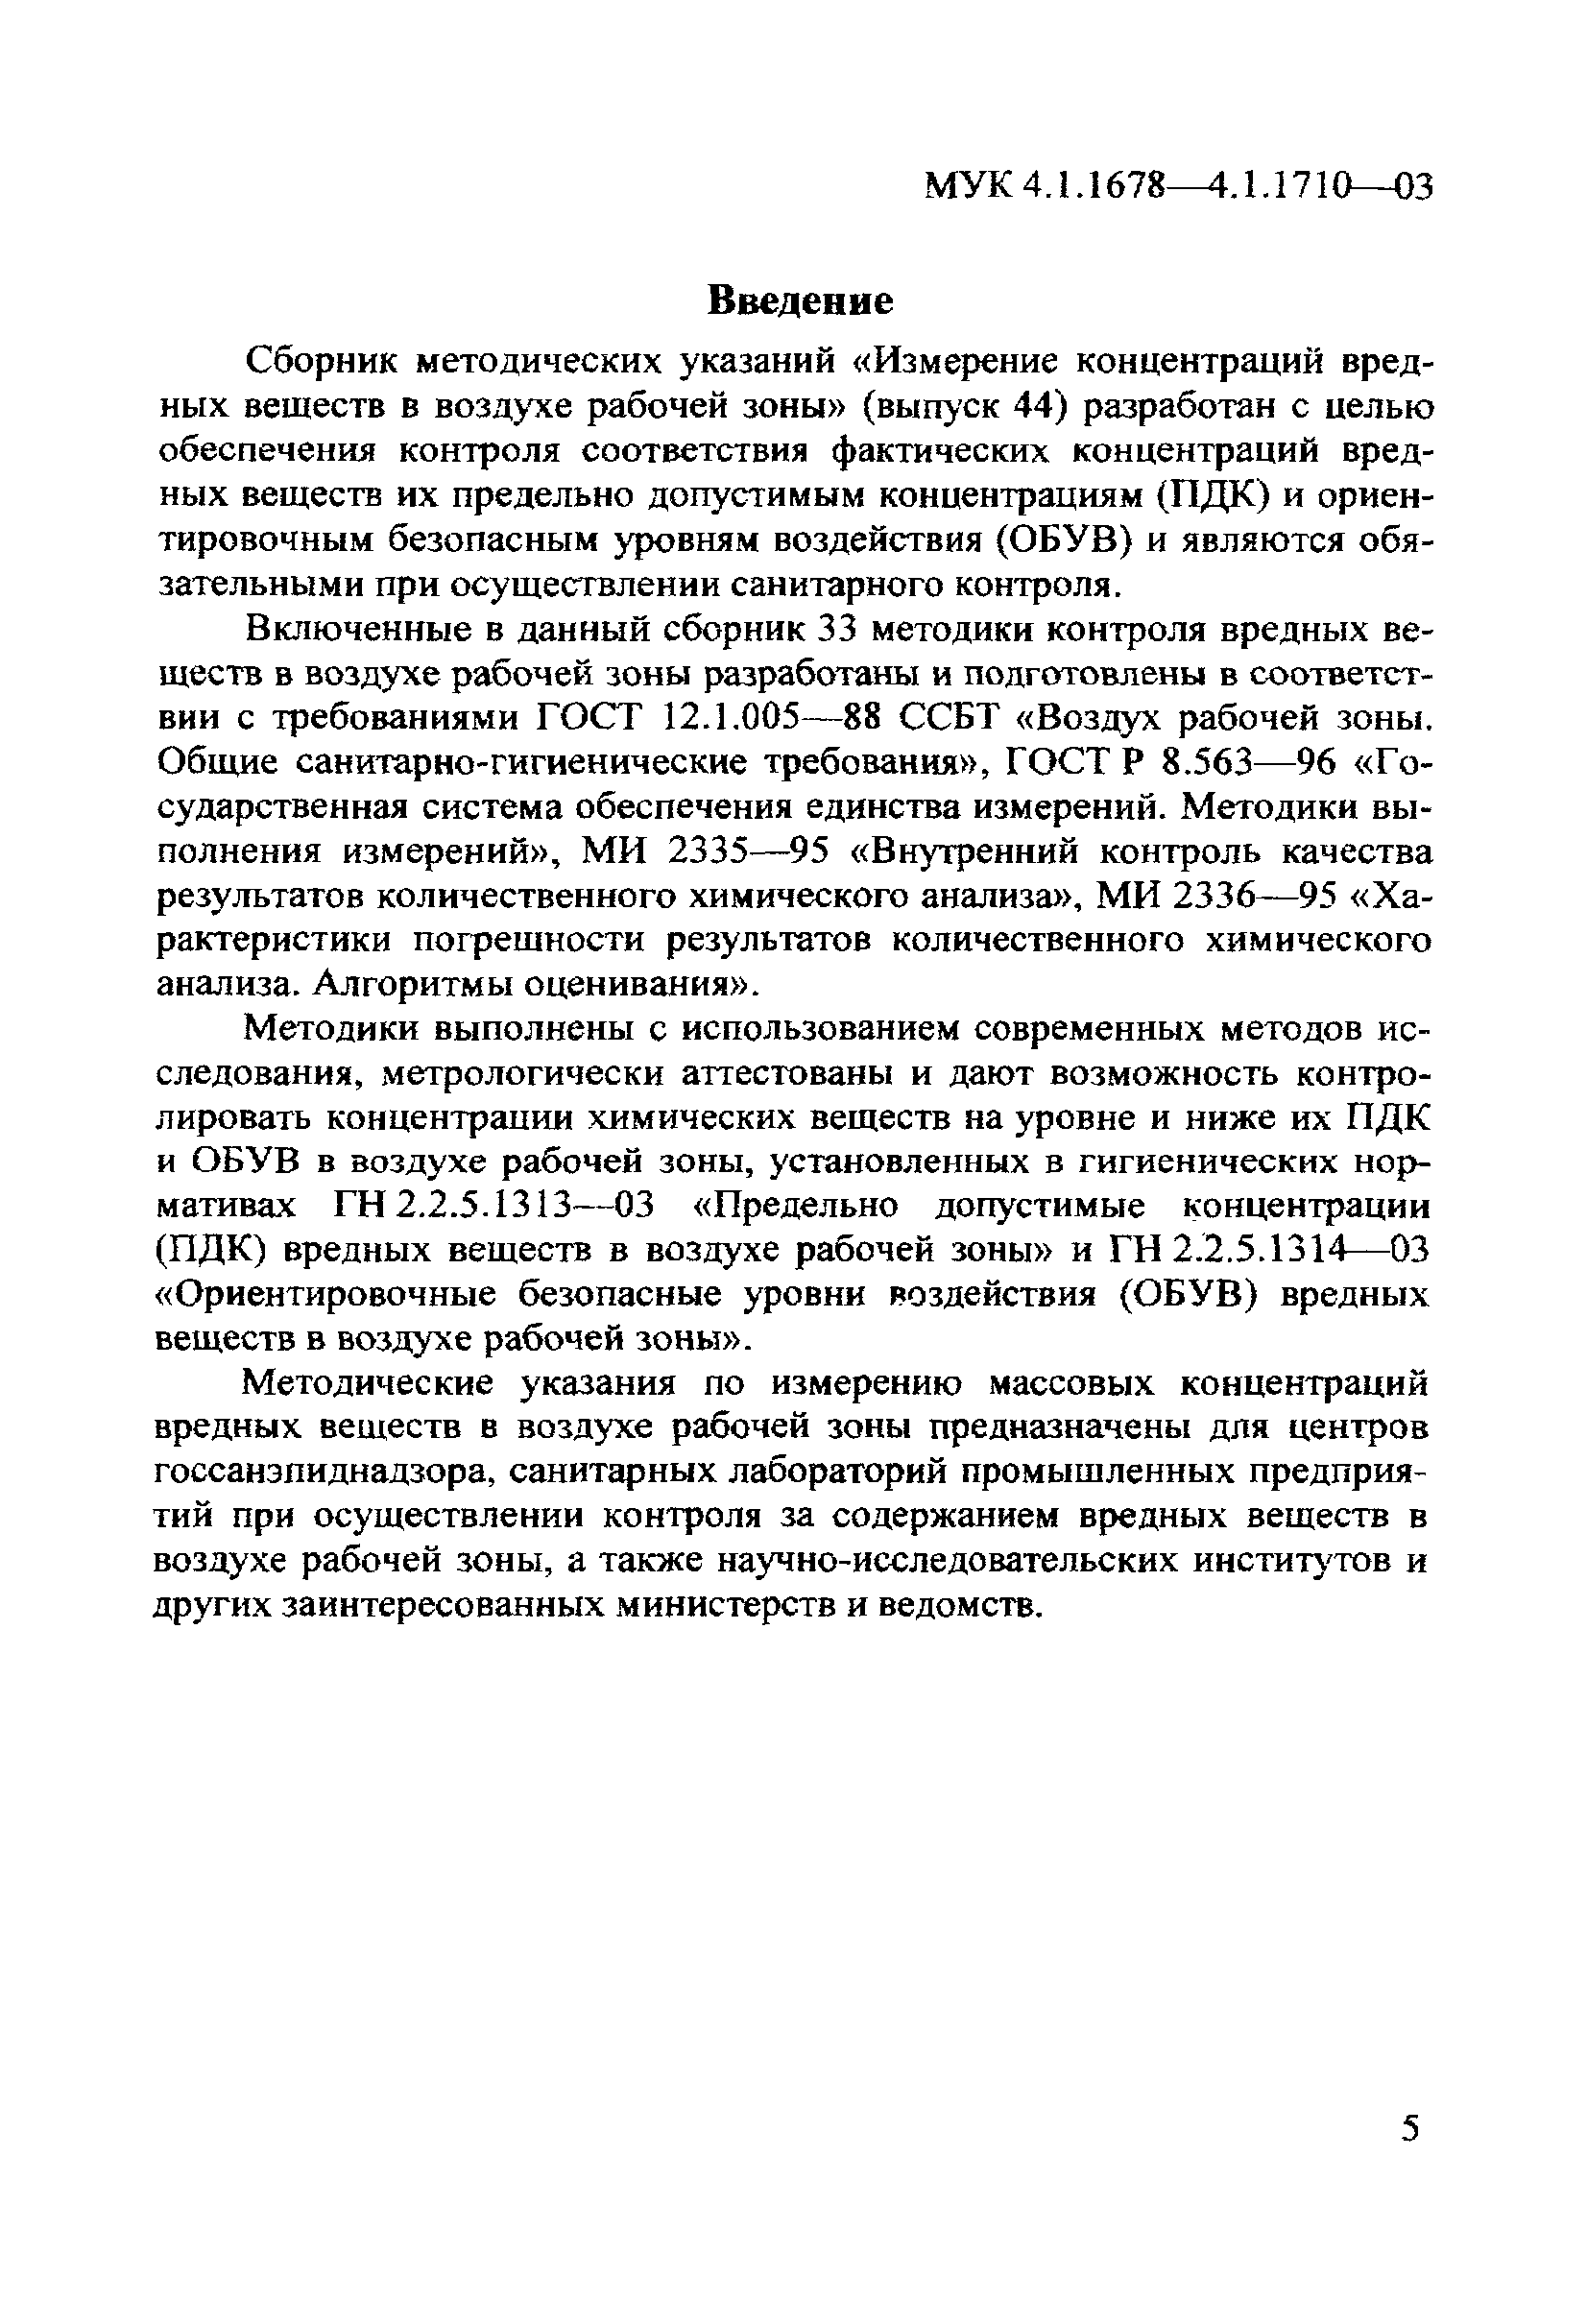 МУК 4.1.1696-03